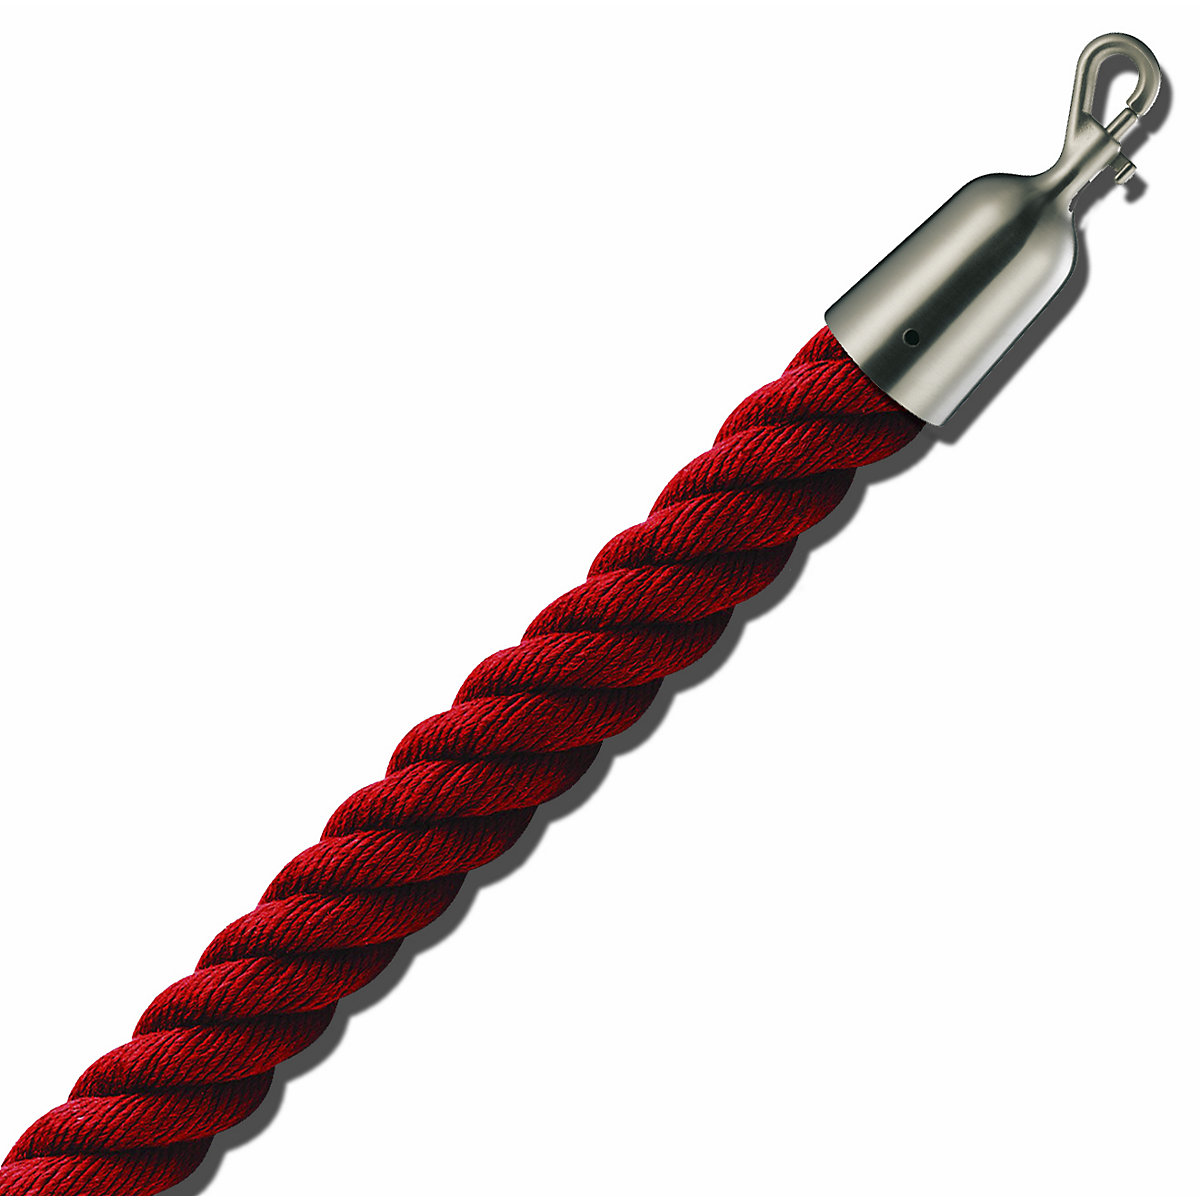 Cordel delimitador de 1,5 m, extremos niquelados mate, cordel rojo-5